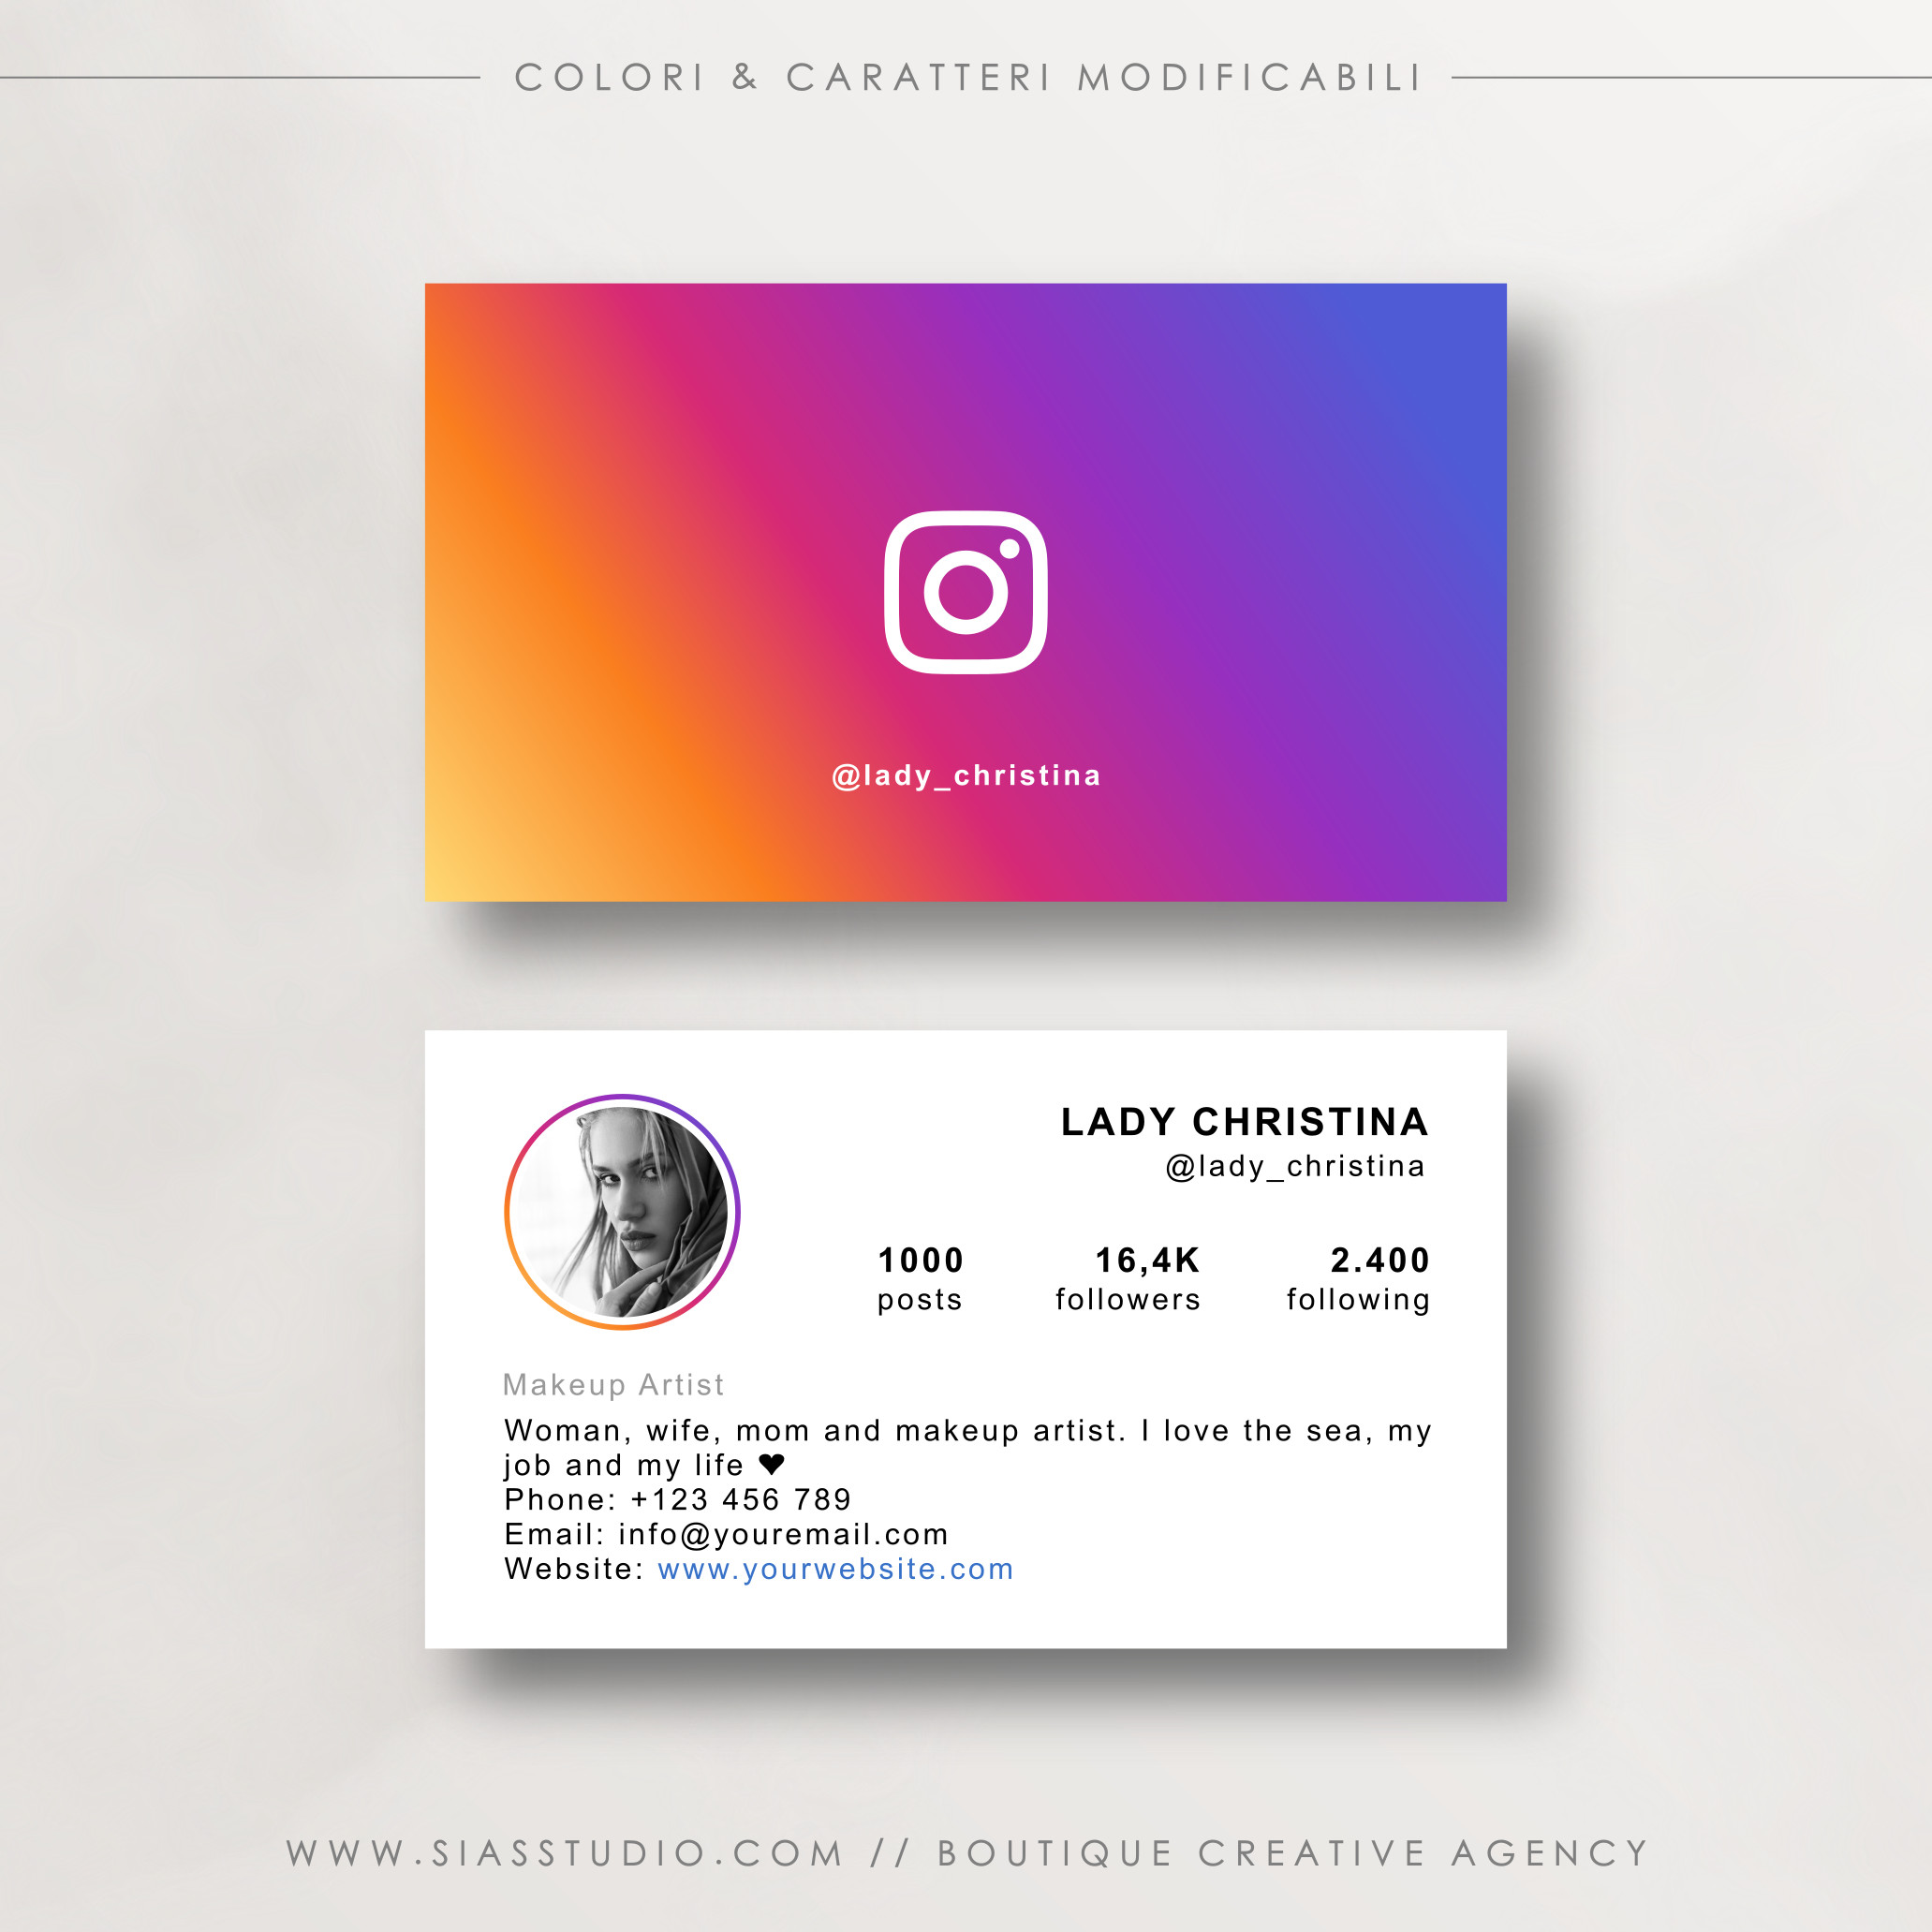 Lady Christina - Biglietto da visita con profilo Instagram - Sias Studio